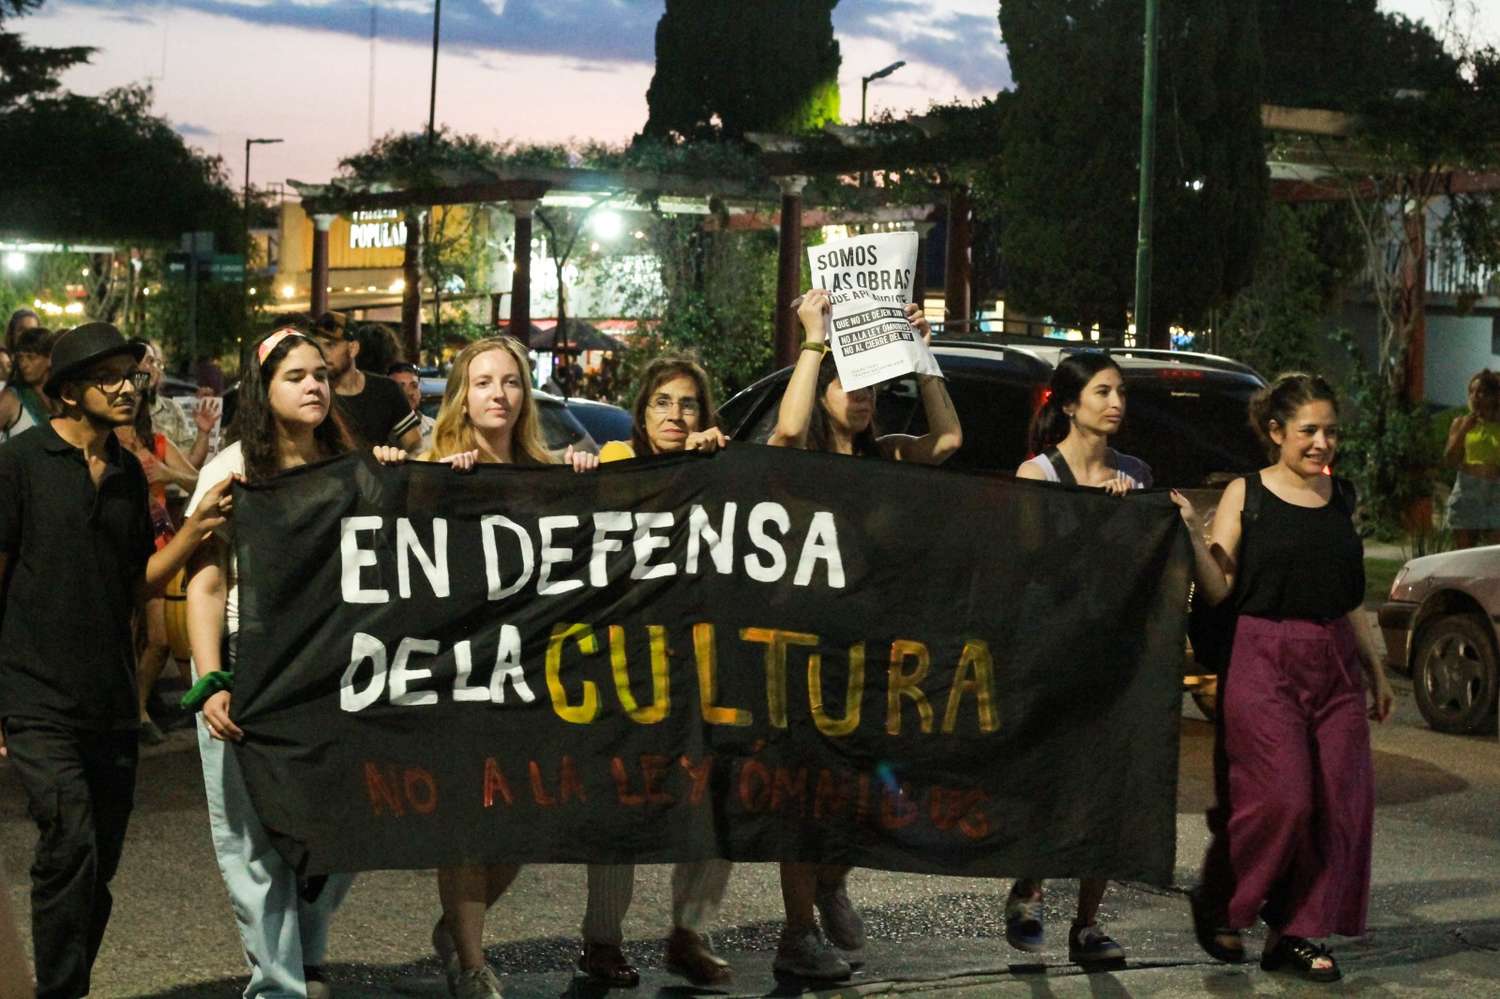 El colectivo Teatristas prepara una "Re Vuelta cultural" como resistencia